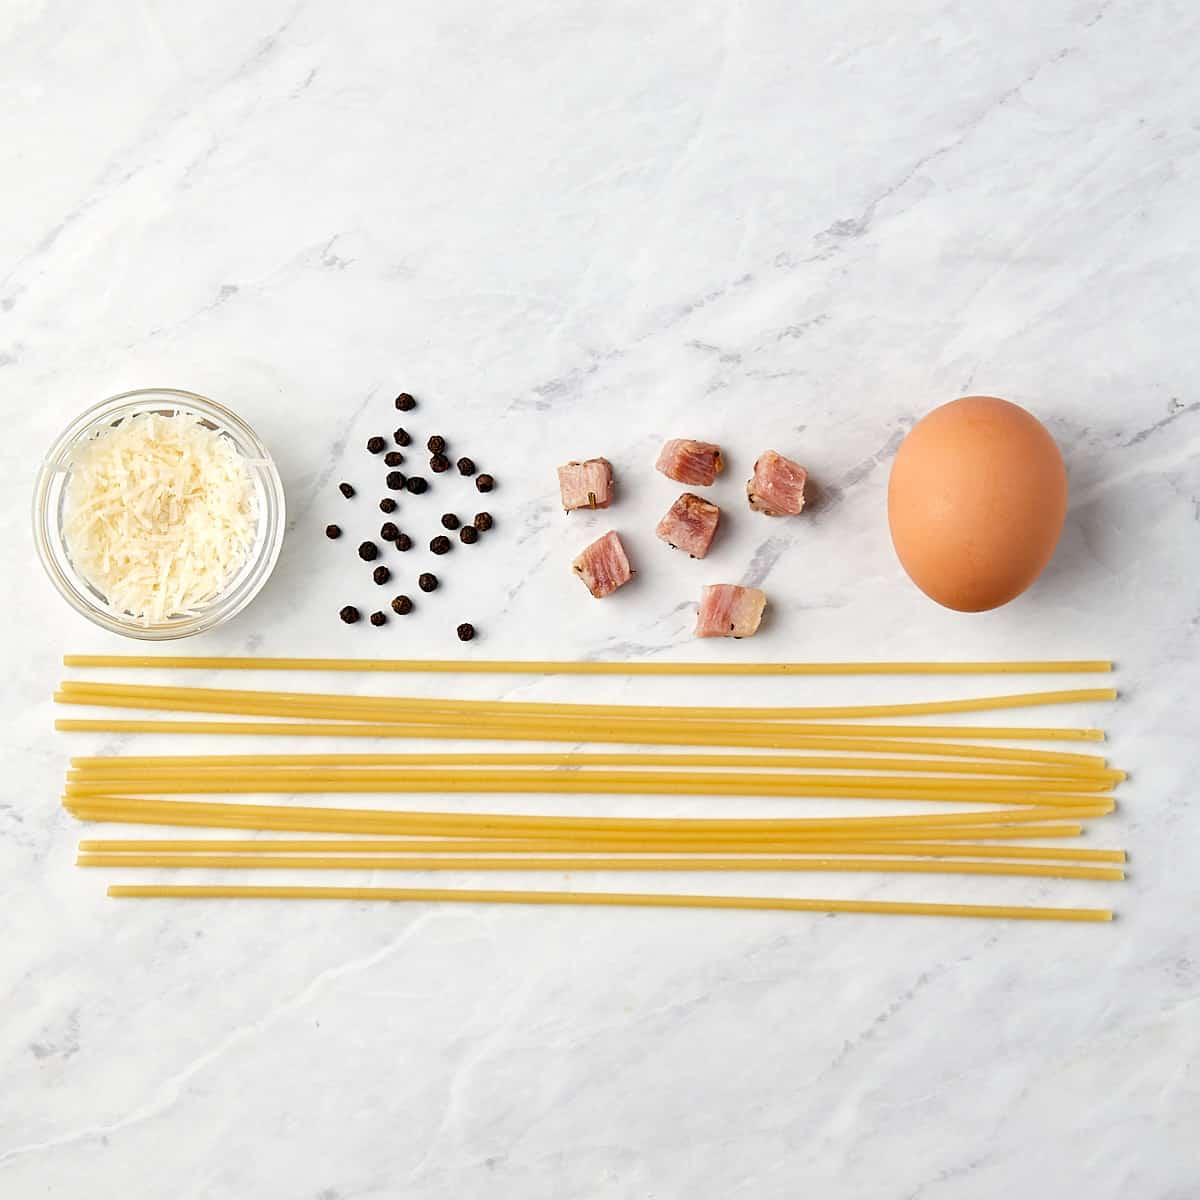 ingredients for pasta carbonara